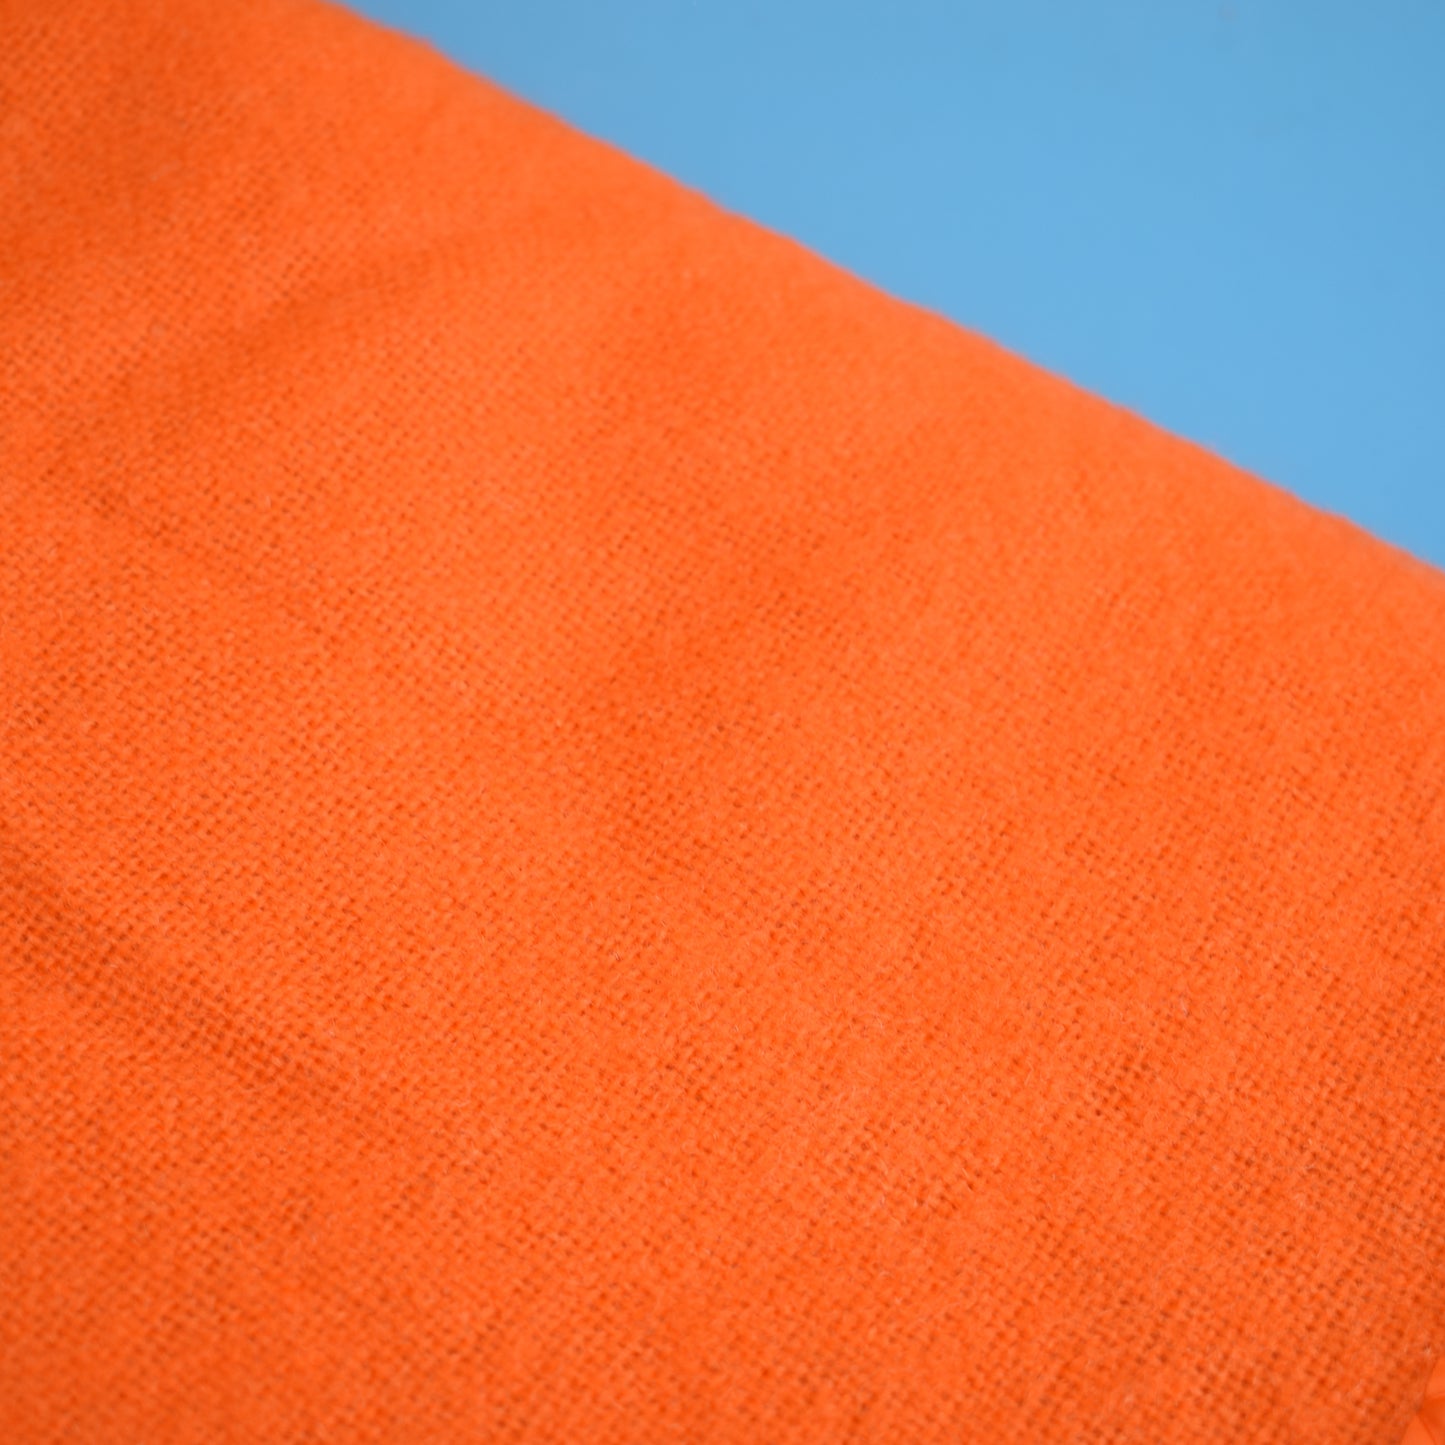 Vintage 1960s Blanket - Orange Wool